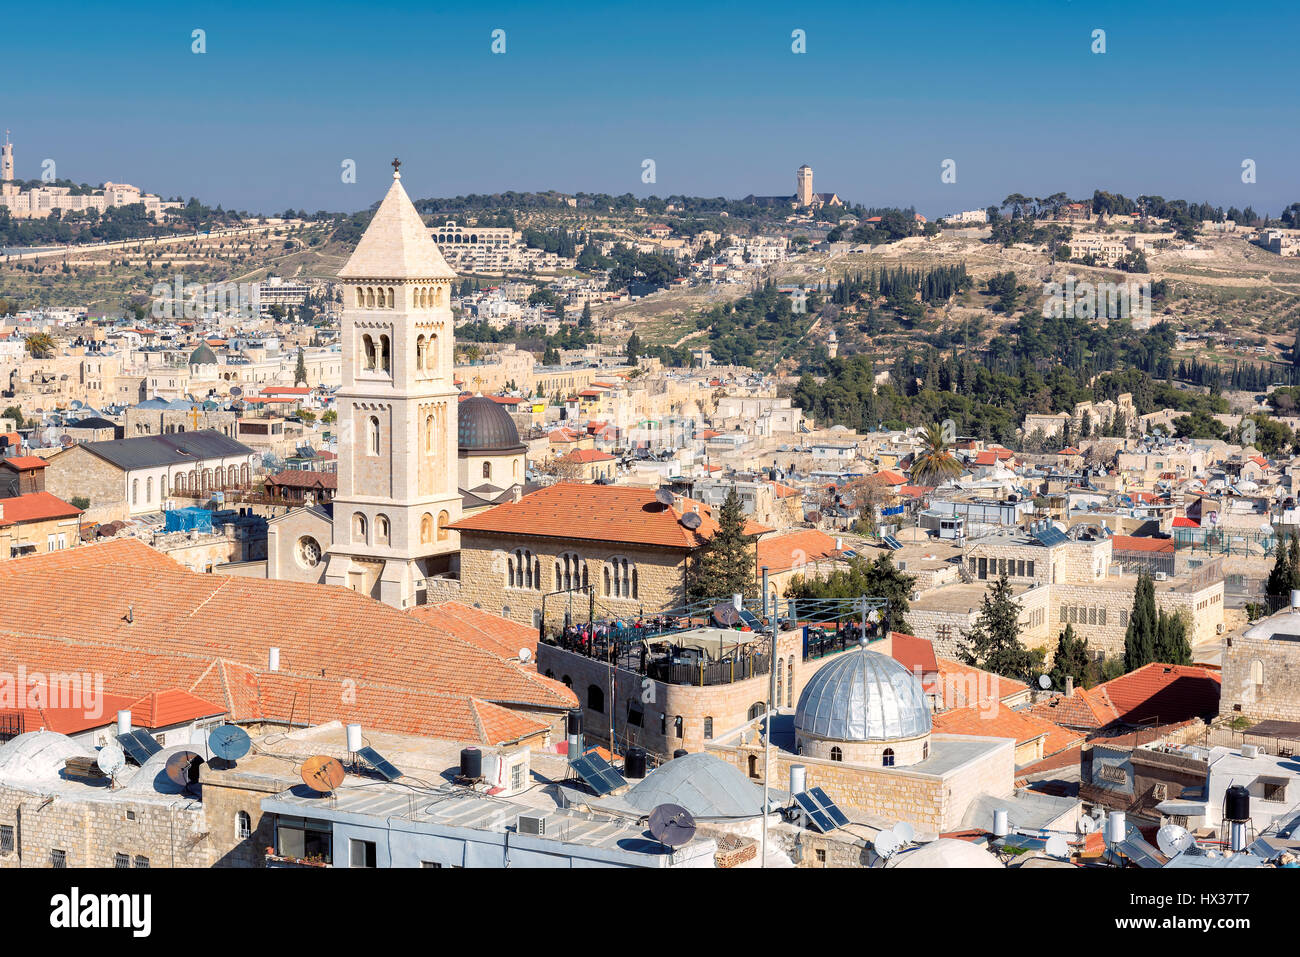 La Ciudad Vieja de Jerusalén, Israel. Foto de stock